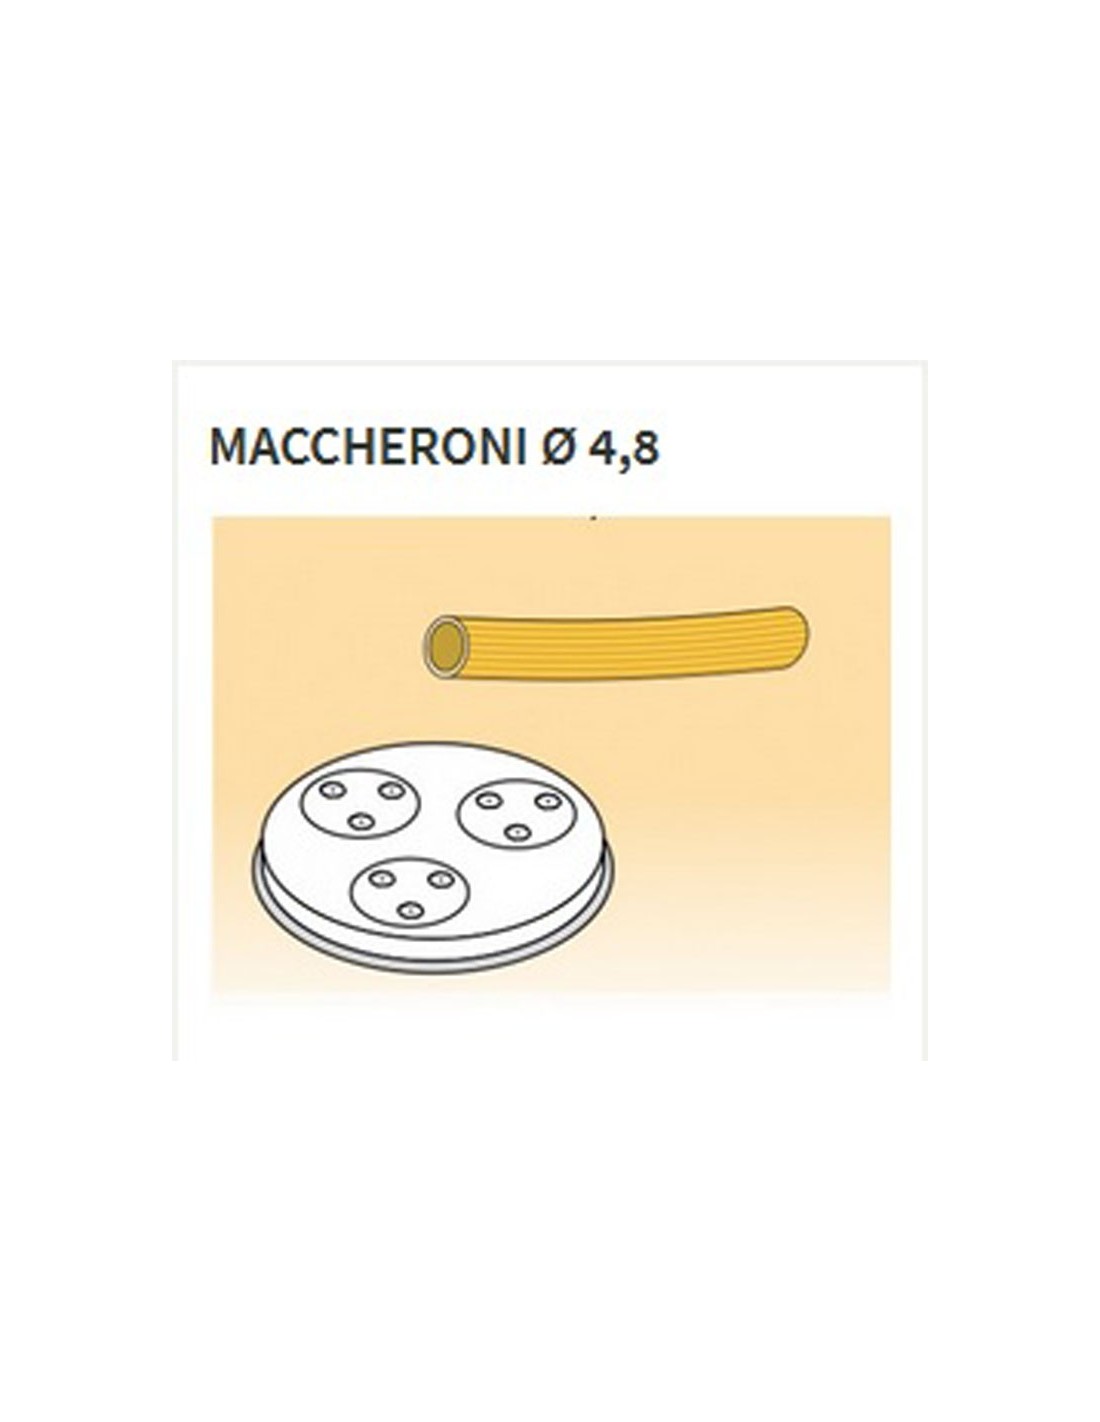 Trafile formati vari in lega ottone - Bronzo - Per macchina pasta fresca modello MPF15 - Maccheroni Ø mm 4.8